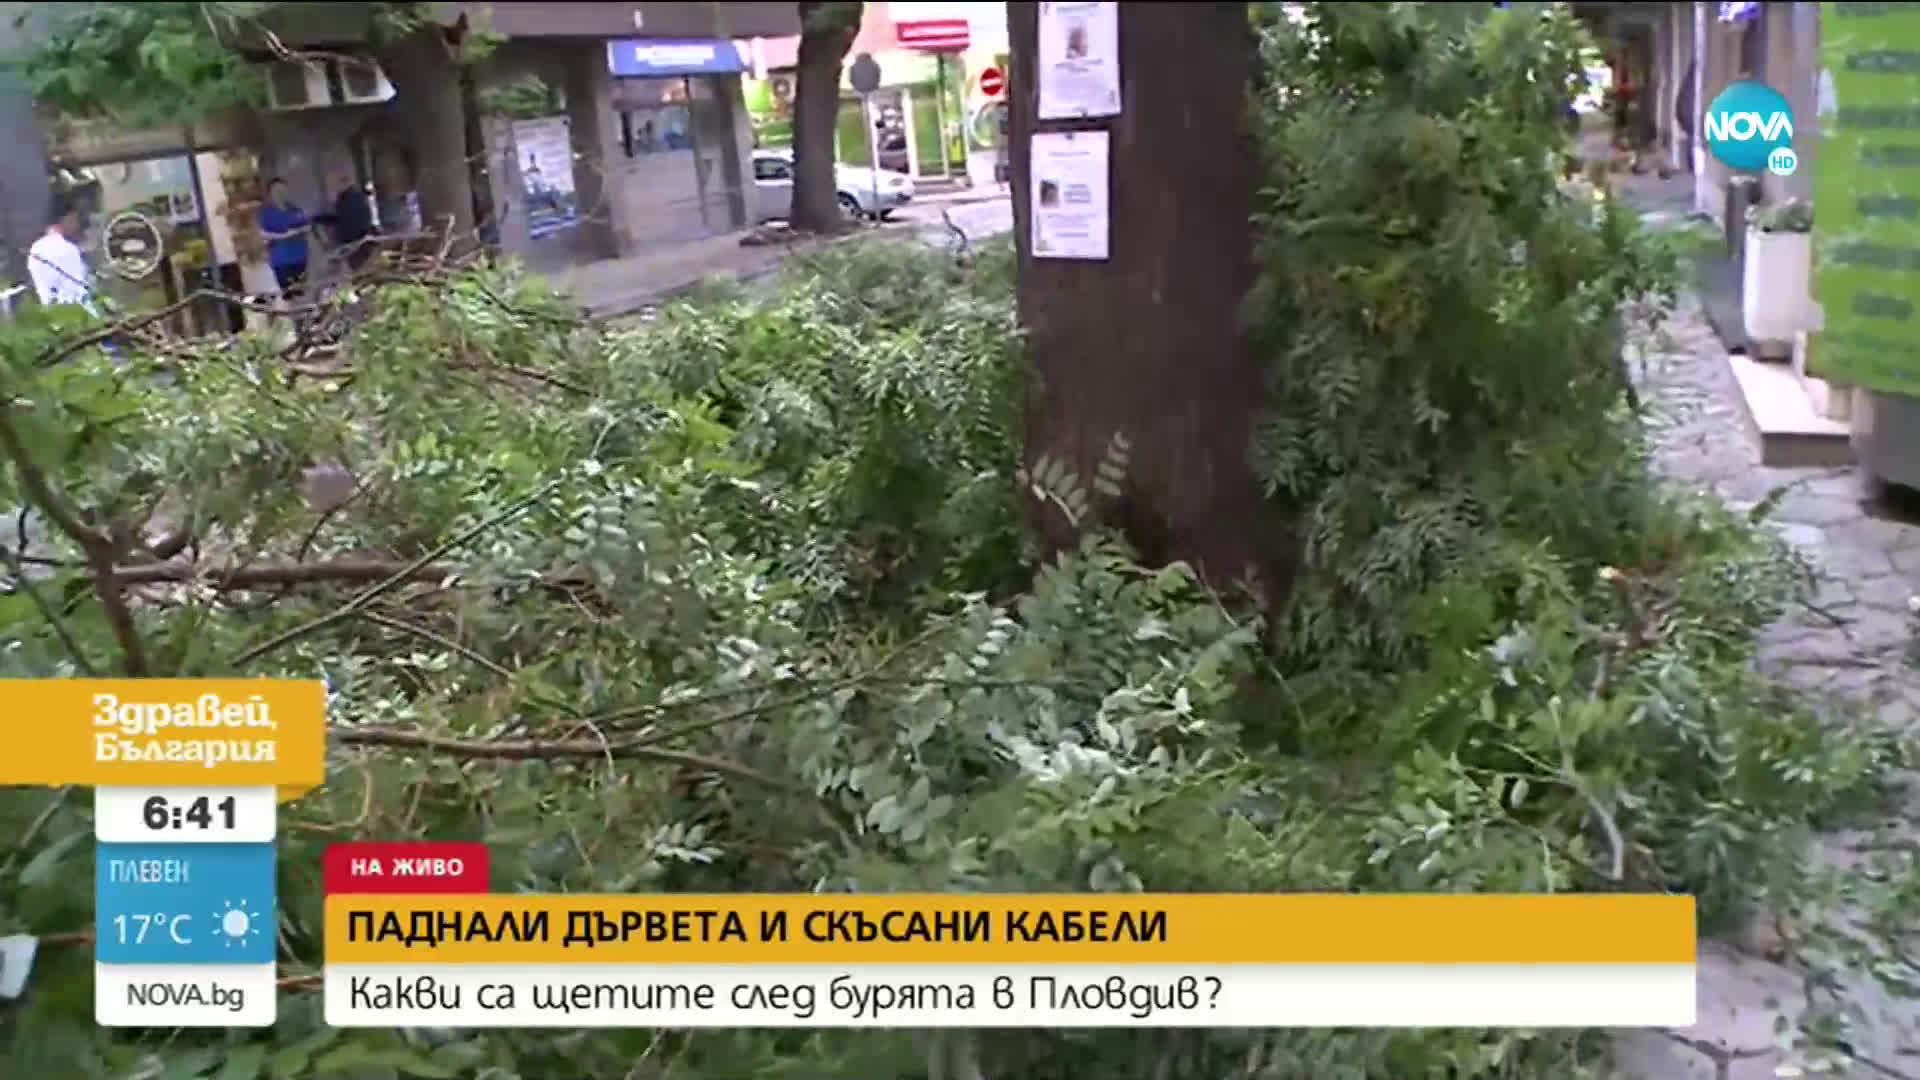 Какви са щетите след бурята в Пловдив